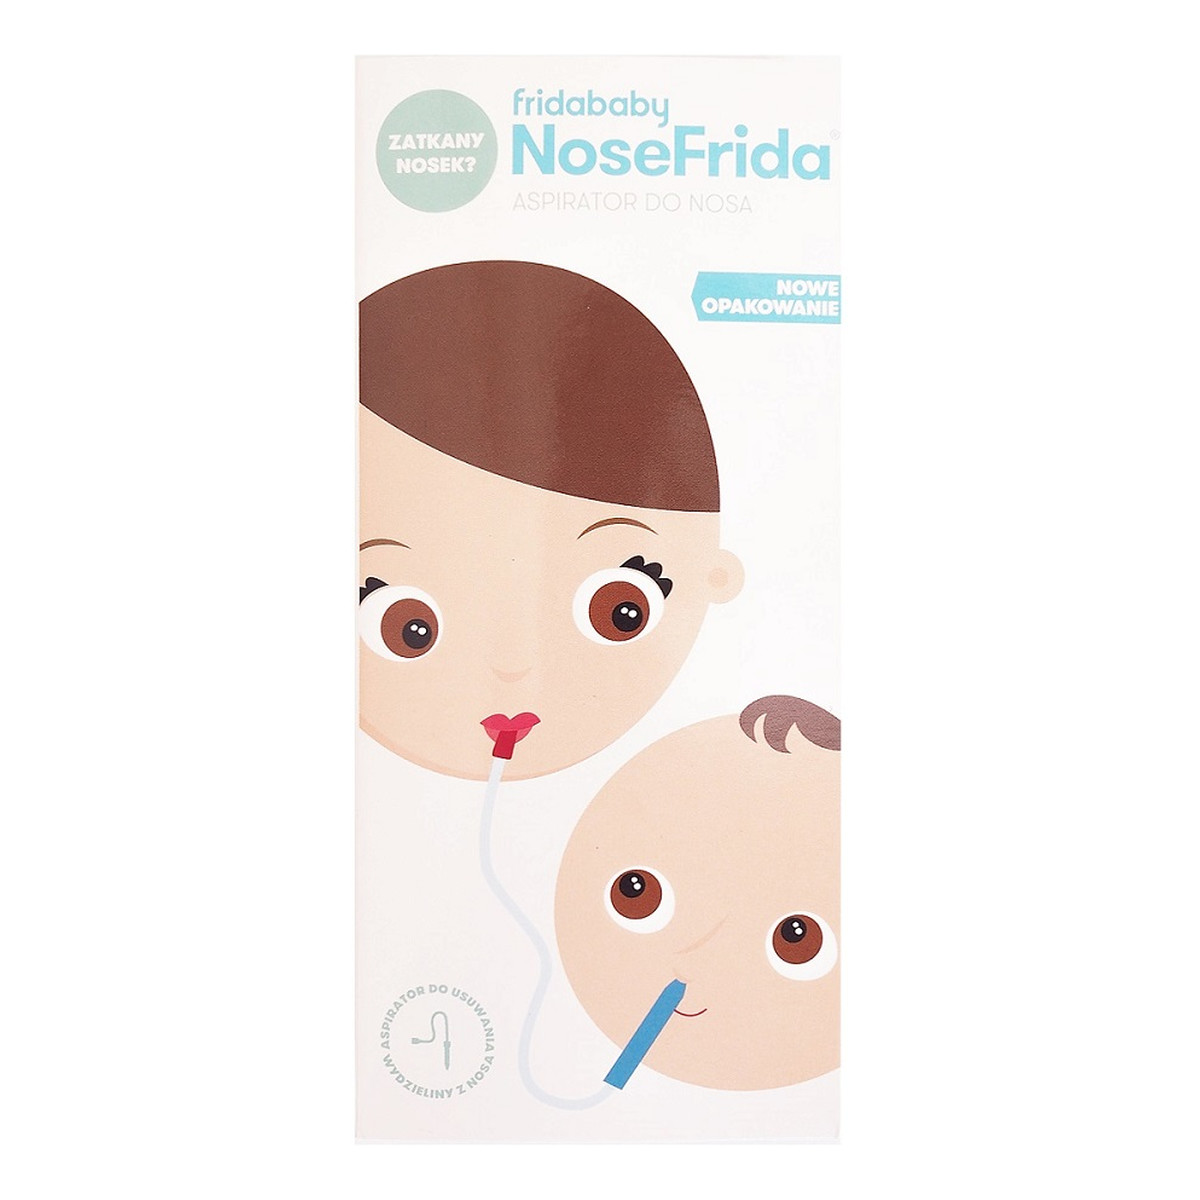 Frida Baby NoseFrida aspirator do nosa + 4 Filtry